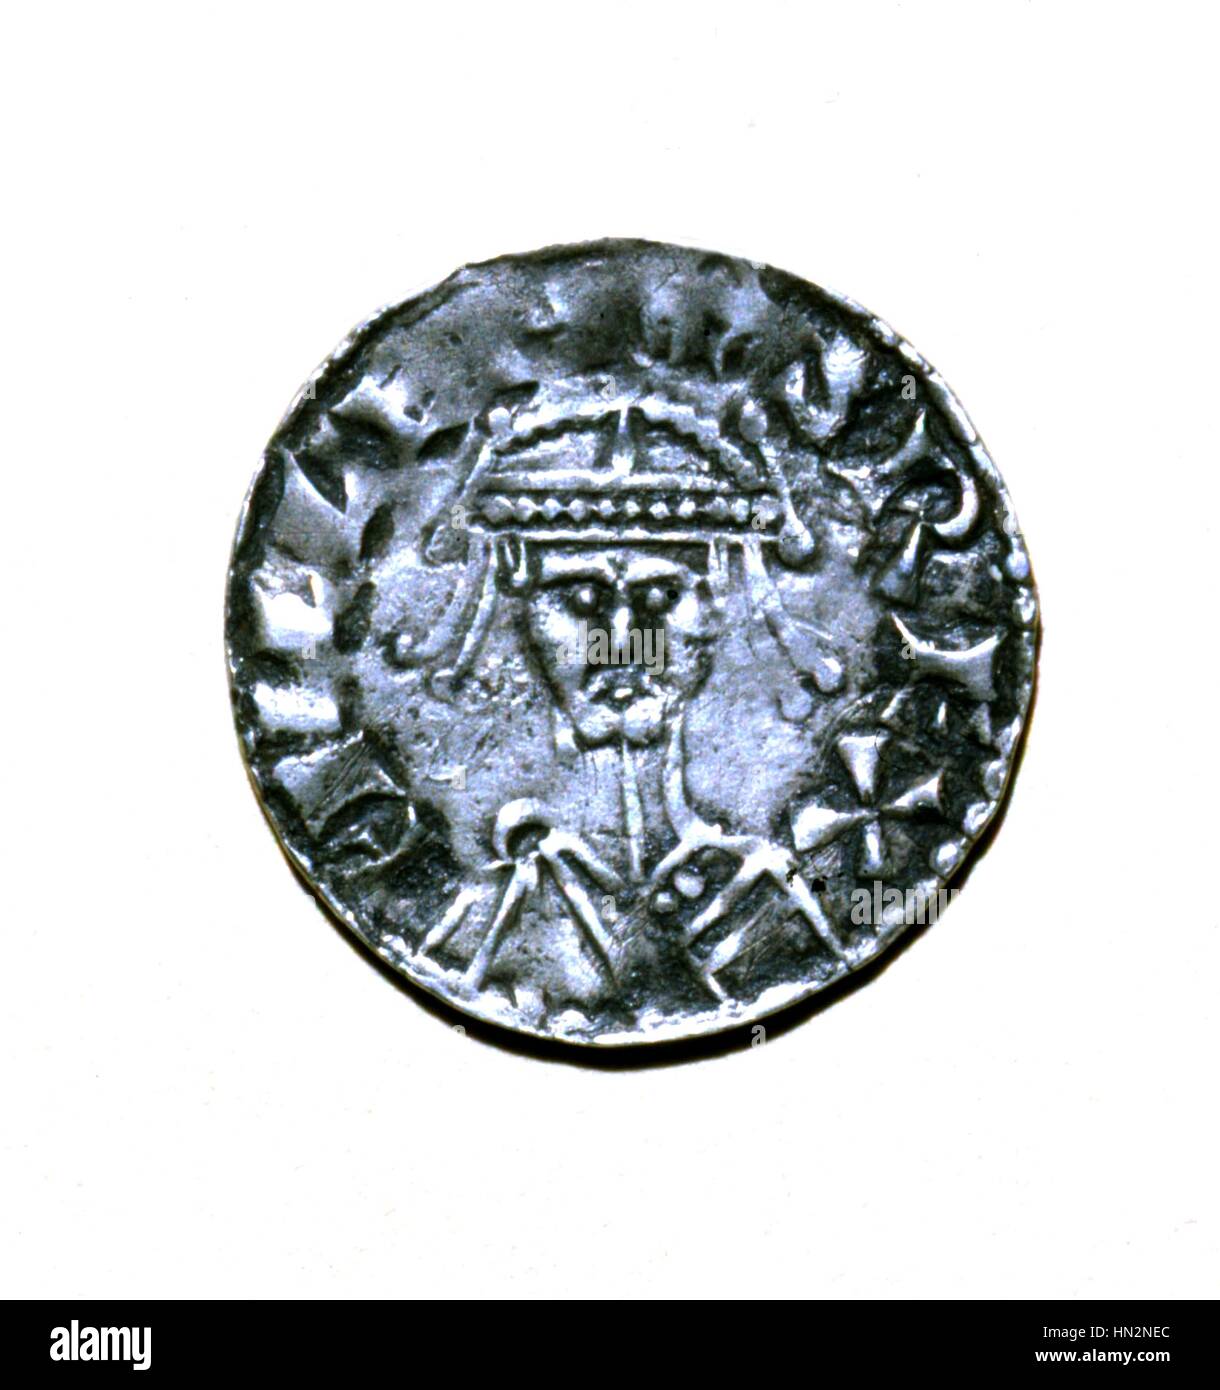 Recto d'un denier d'argent représentant Guillaume le Conquérant (1027/28-1087), duc de Normandie (1035-1087) et Roi d'Angleterre (1066-1087) 11e siècle France Banque D'Images